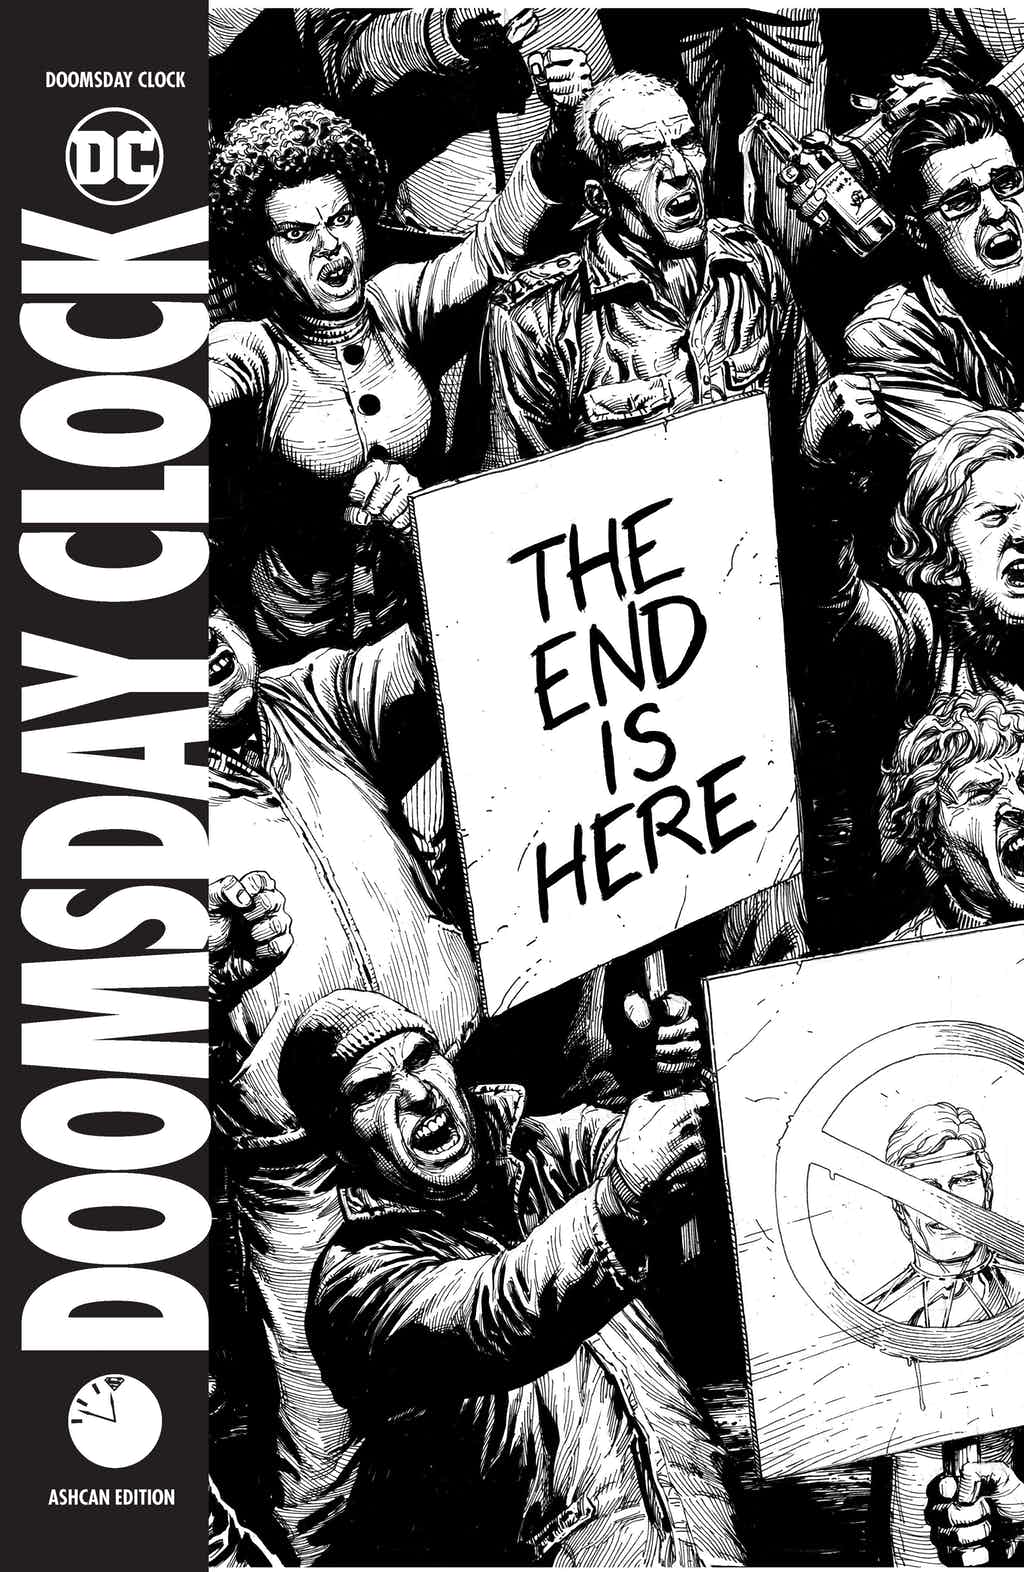 確定是 Watchmen 守護者的續集！！！《毀滅日時鐘》漫畫第 1 回搶先看